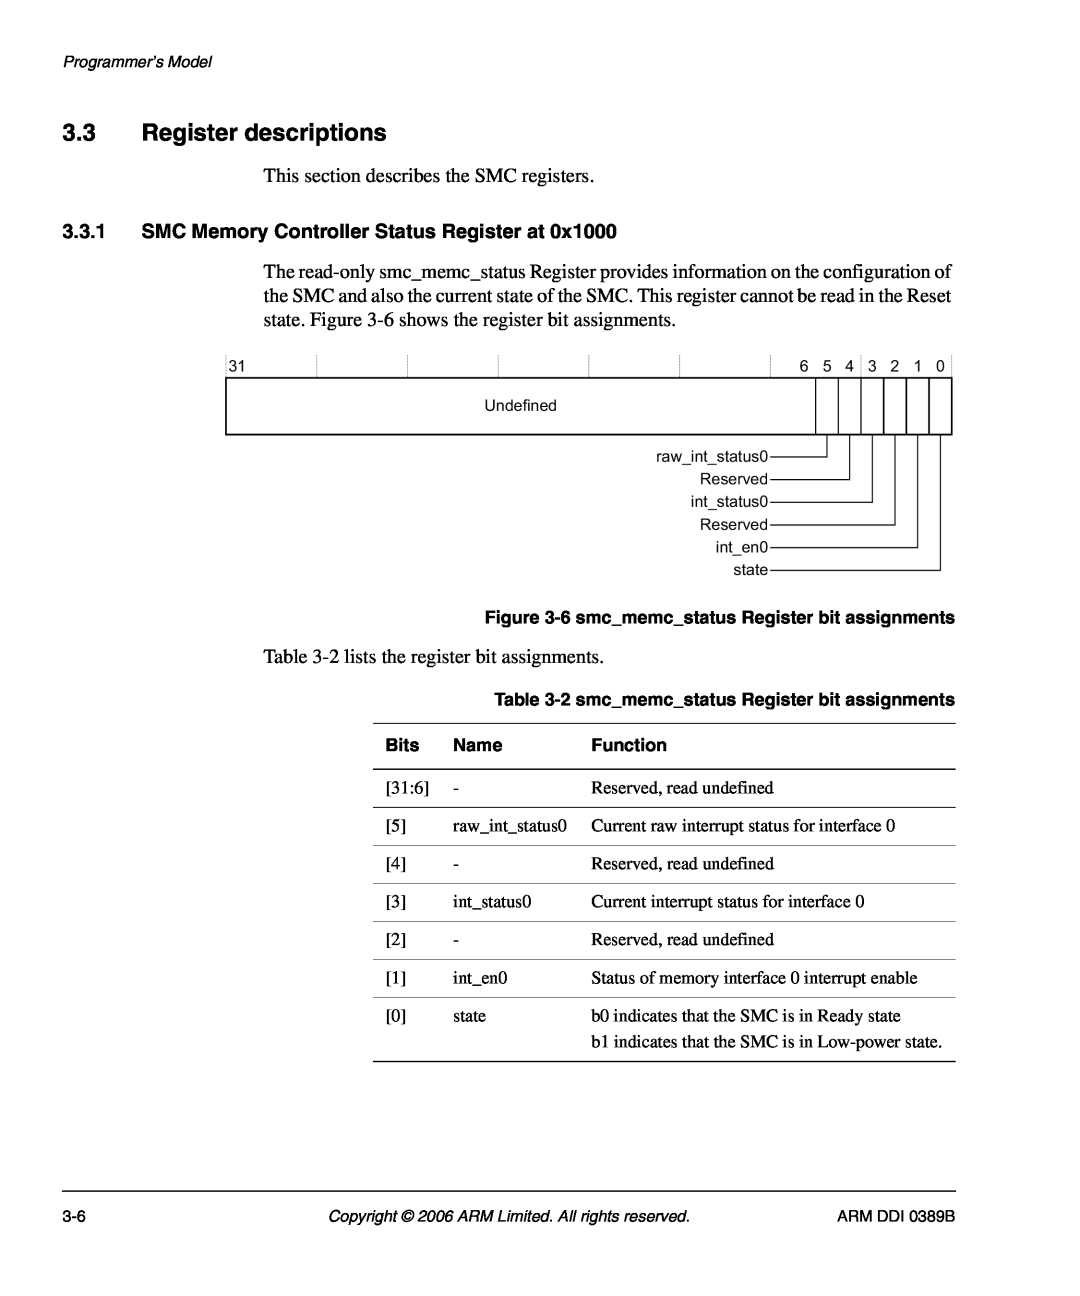 SMC Networks PL241, AHB SRAM/NOR manual Register descriptions, SMC Memory Controller Status Register at 